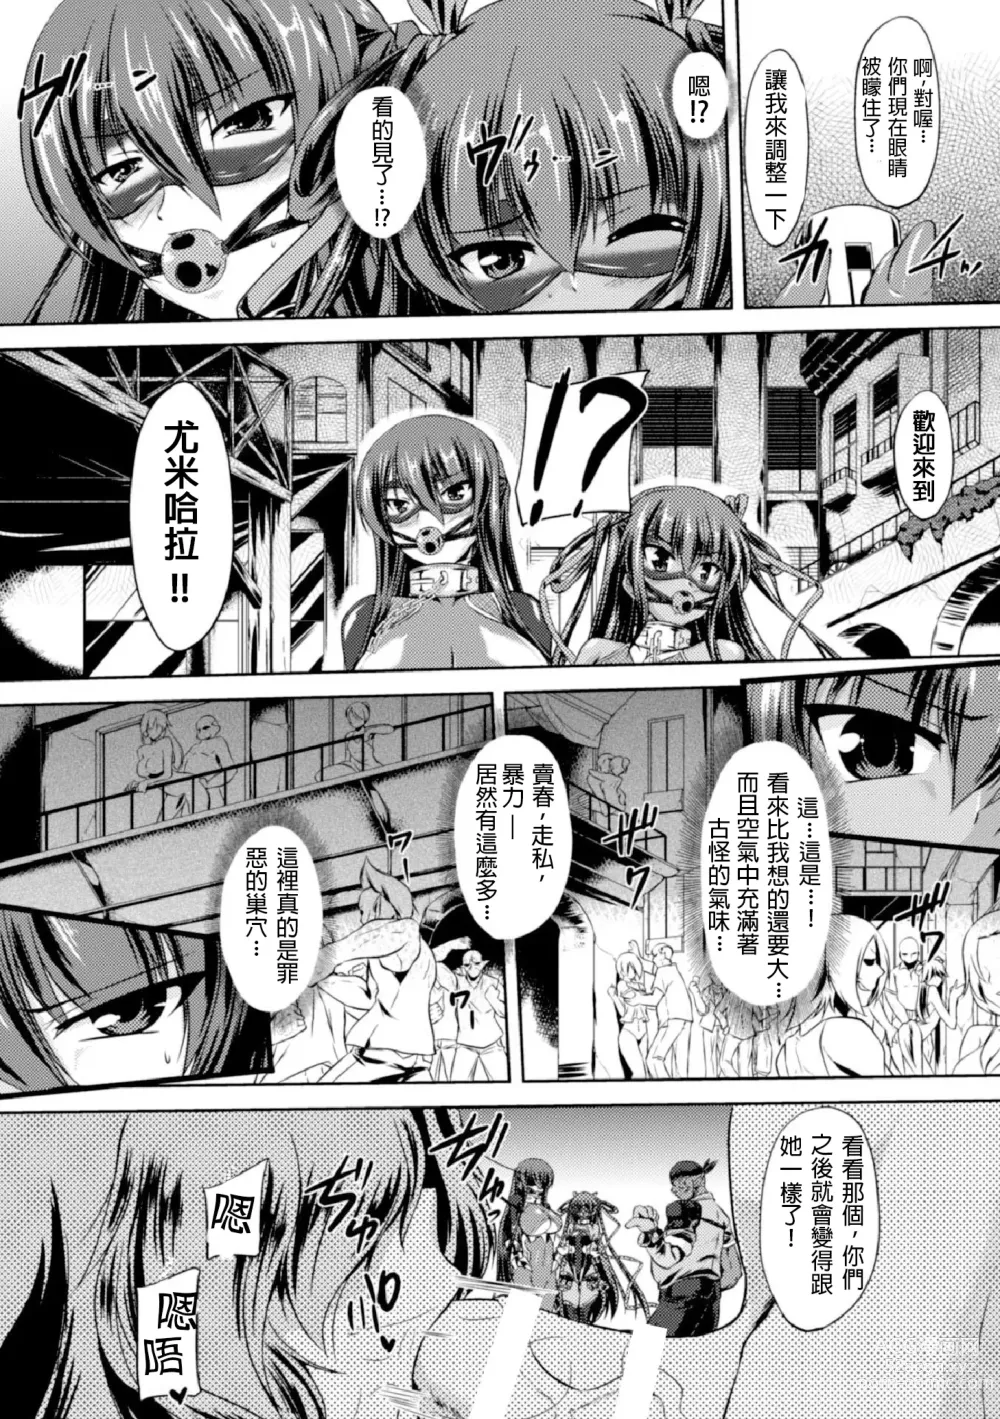 Page 11 of manga Taimanin Yukikaze ~Taimanin Wa Ingoku Ni Shizumu~